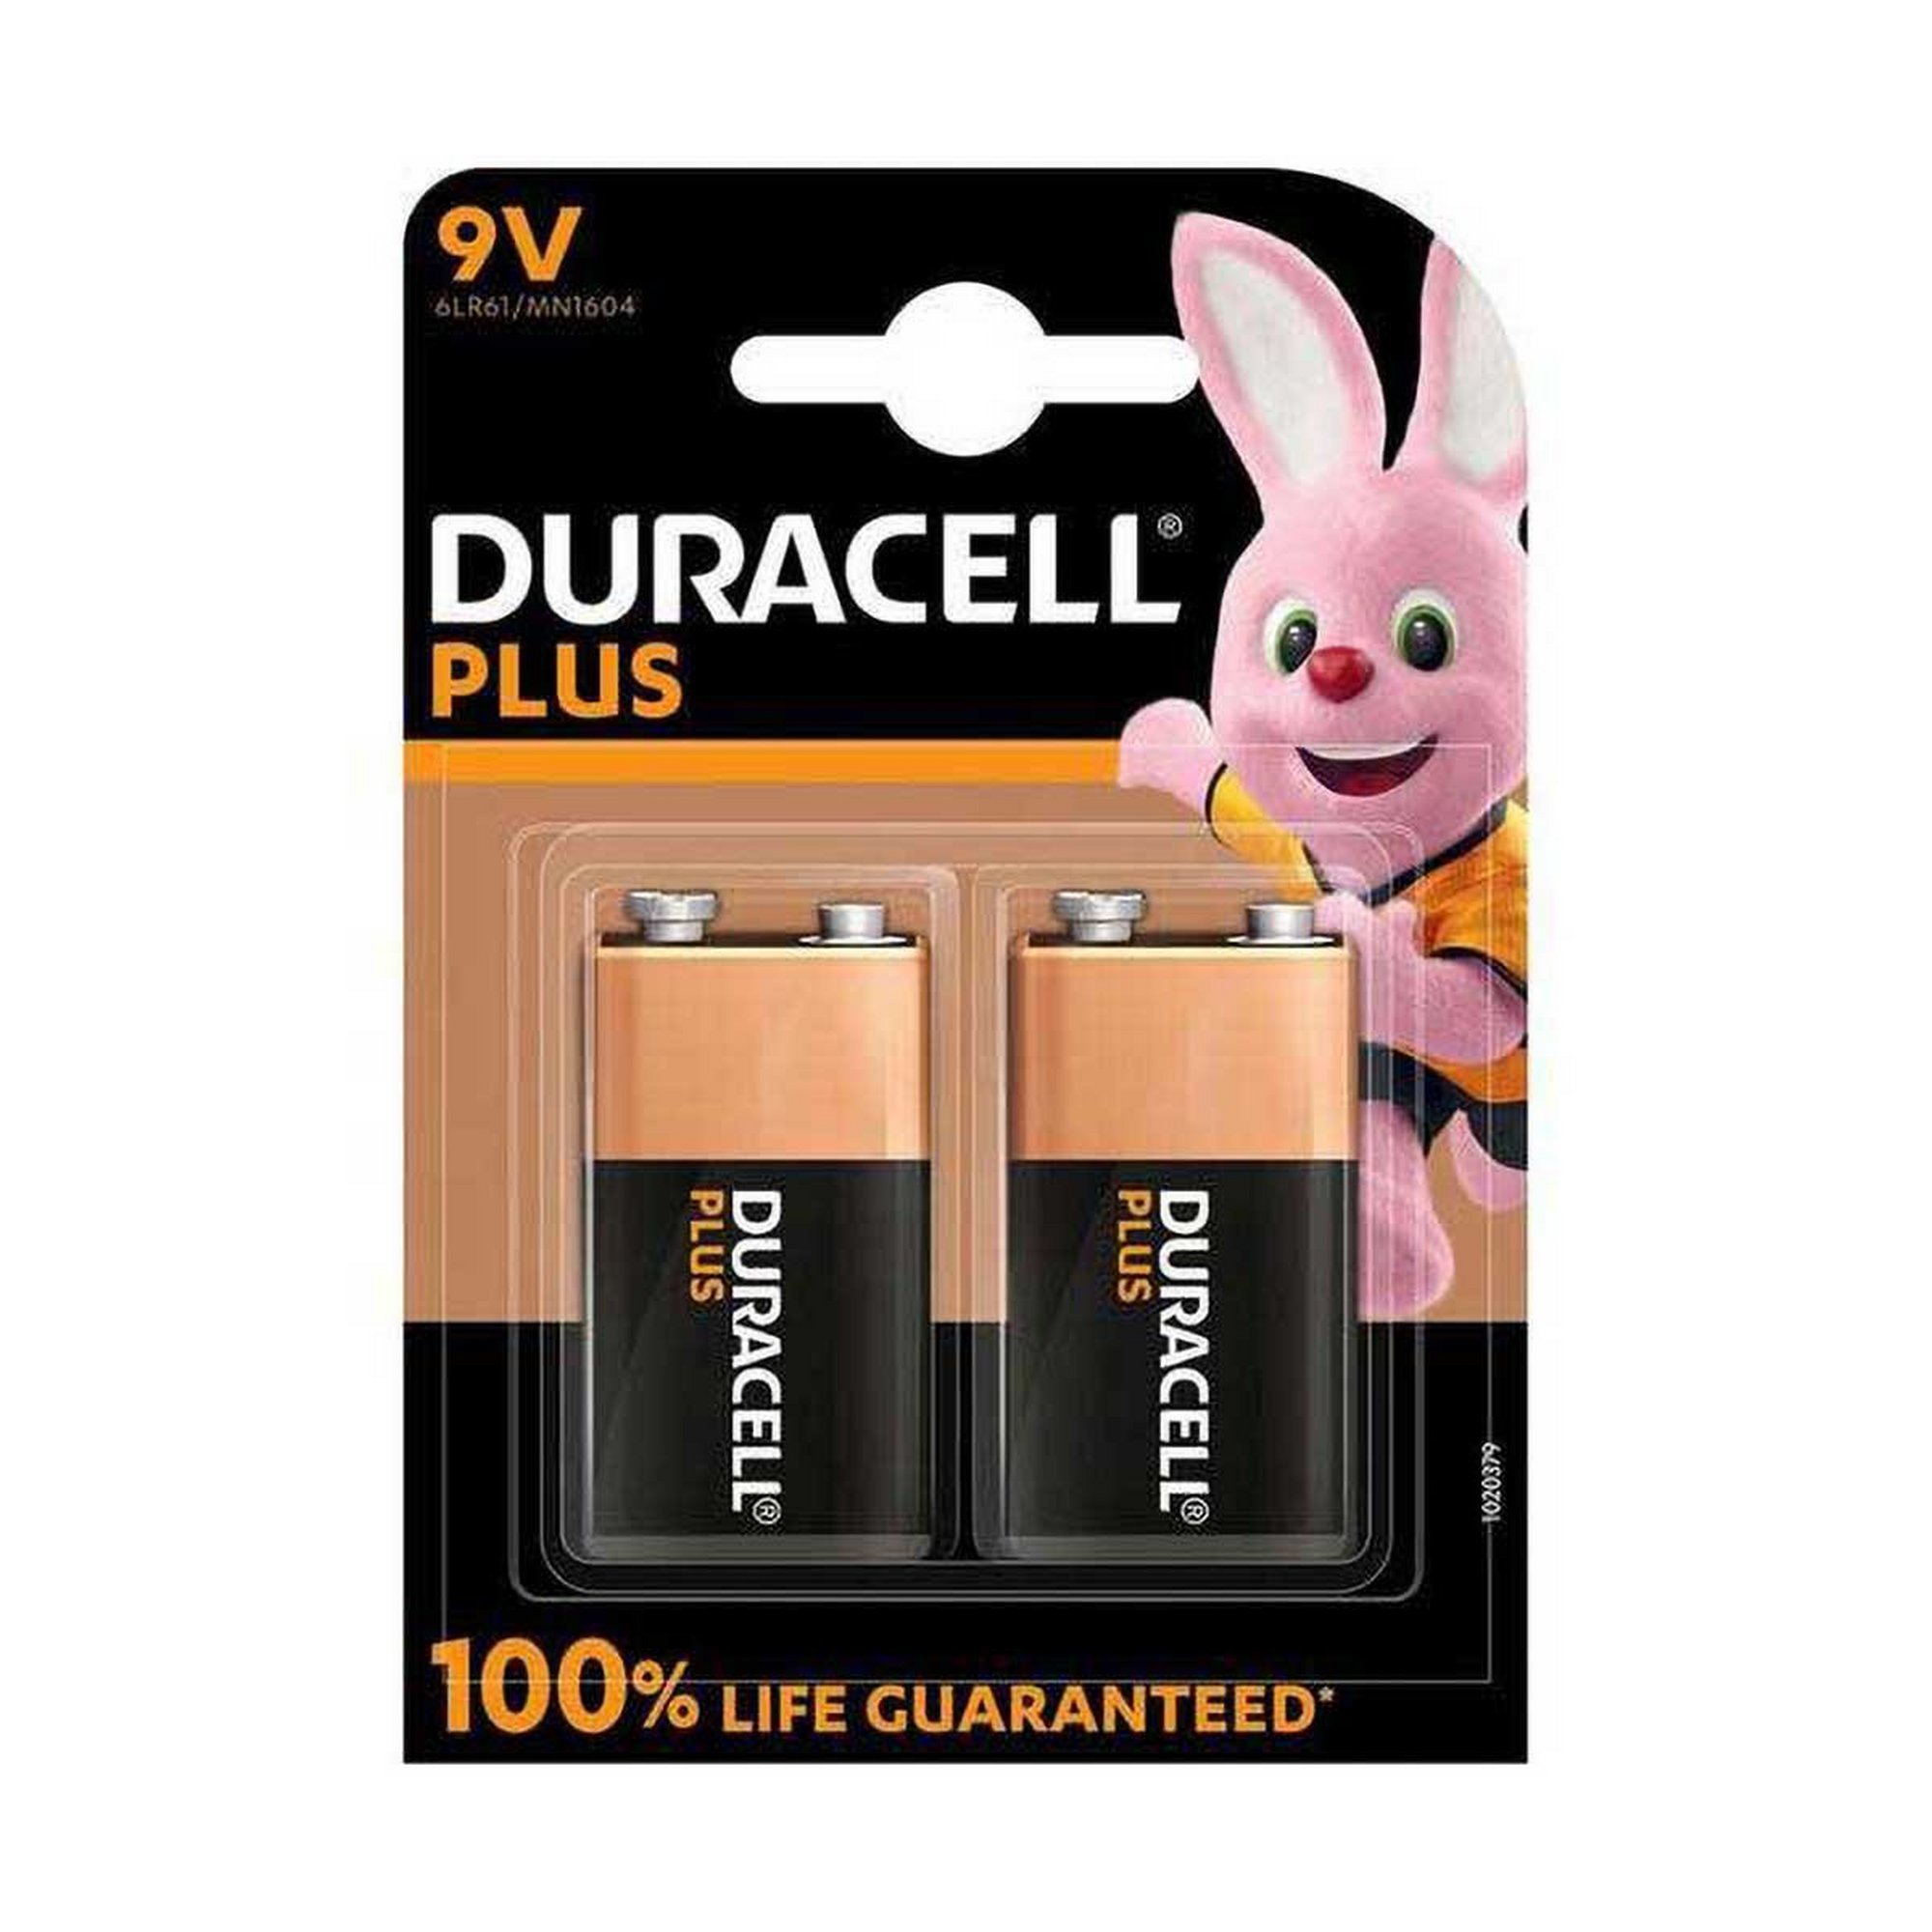 Duracell Plus 9V Alkaline Battery - Pack of 2